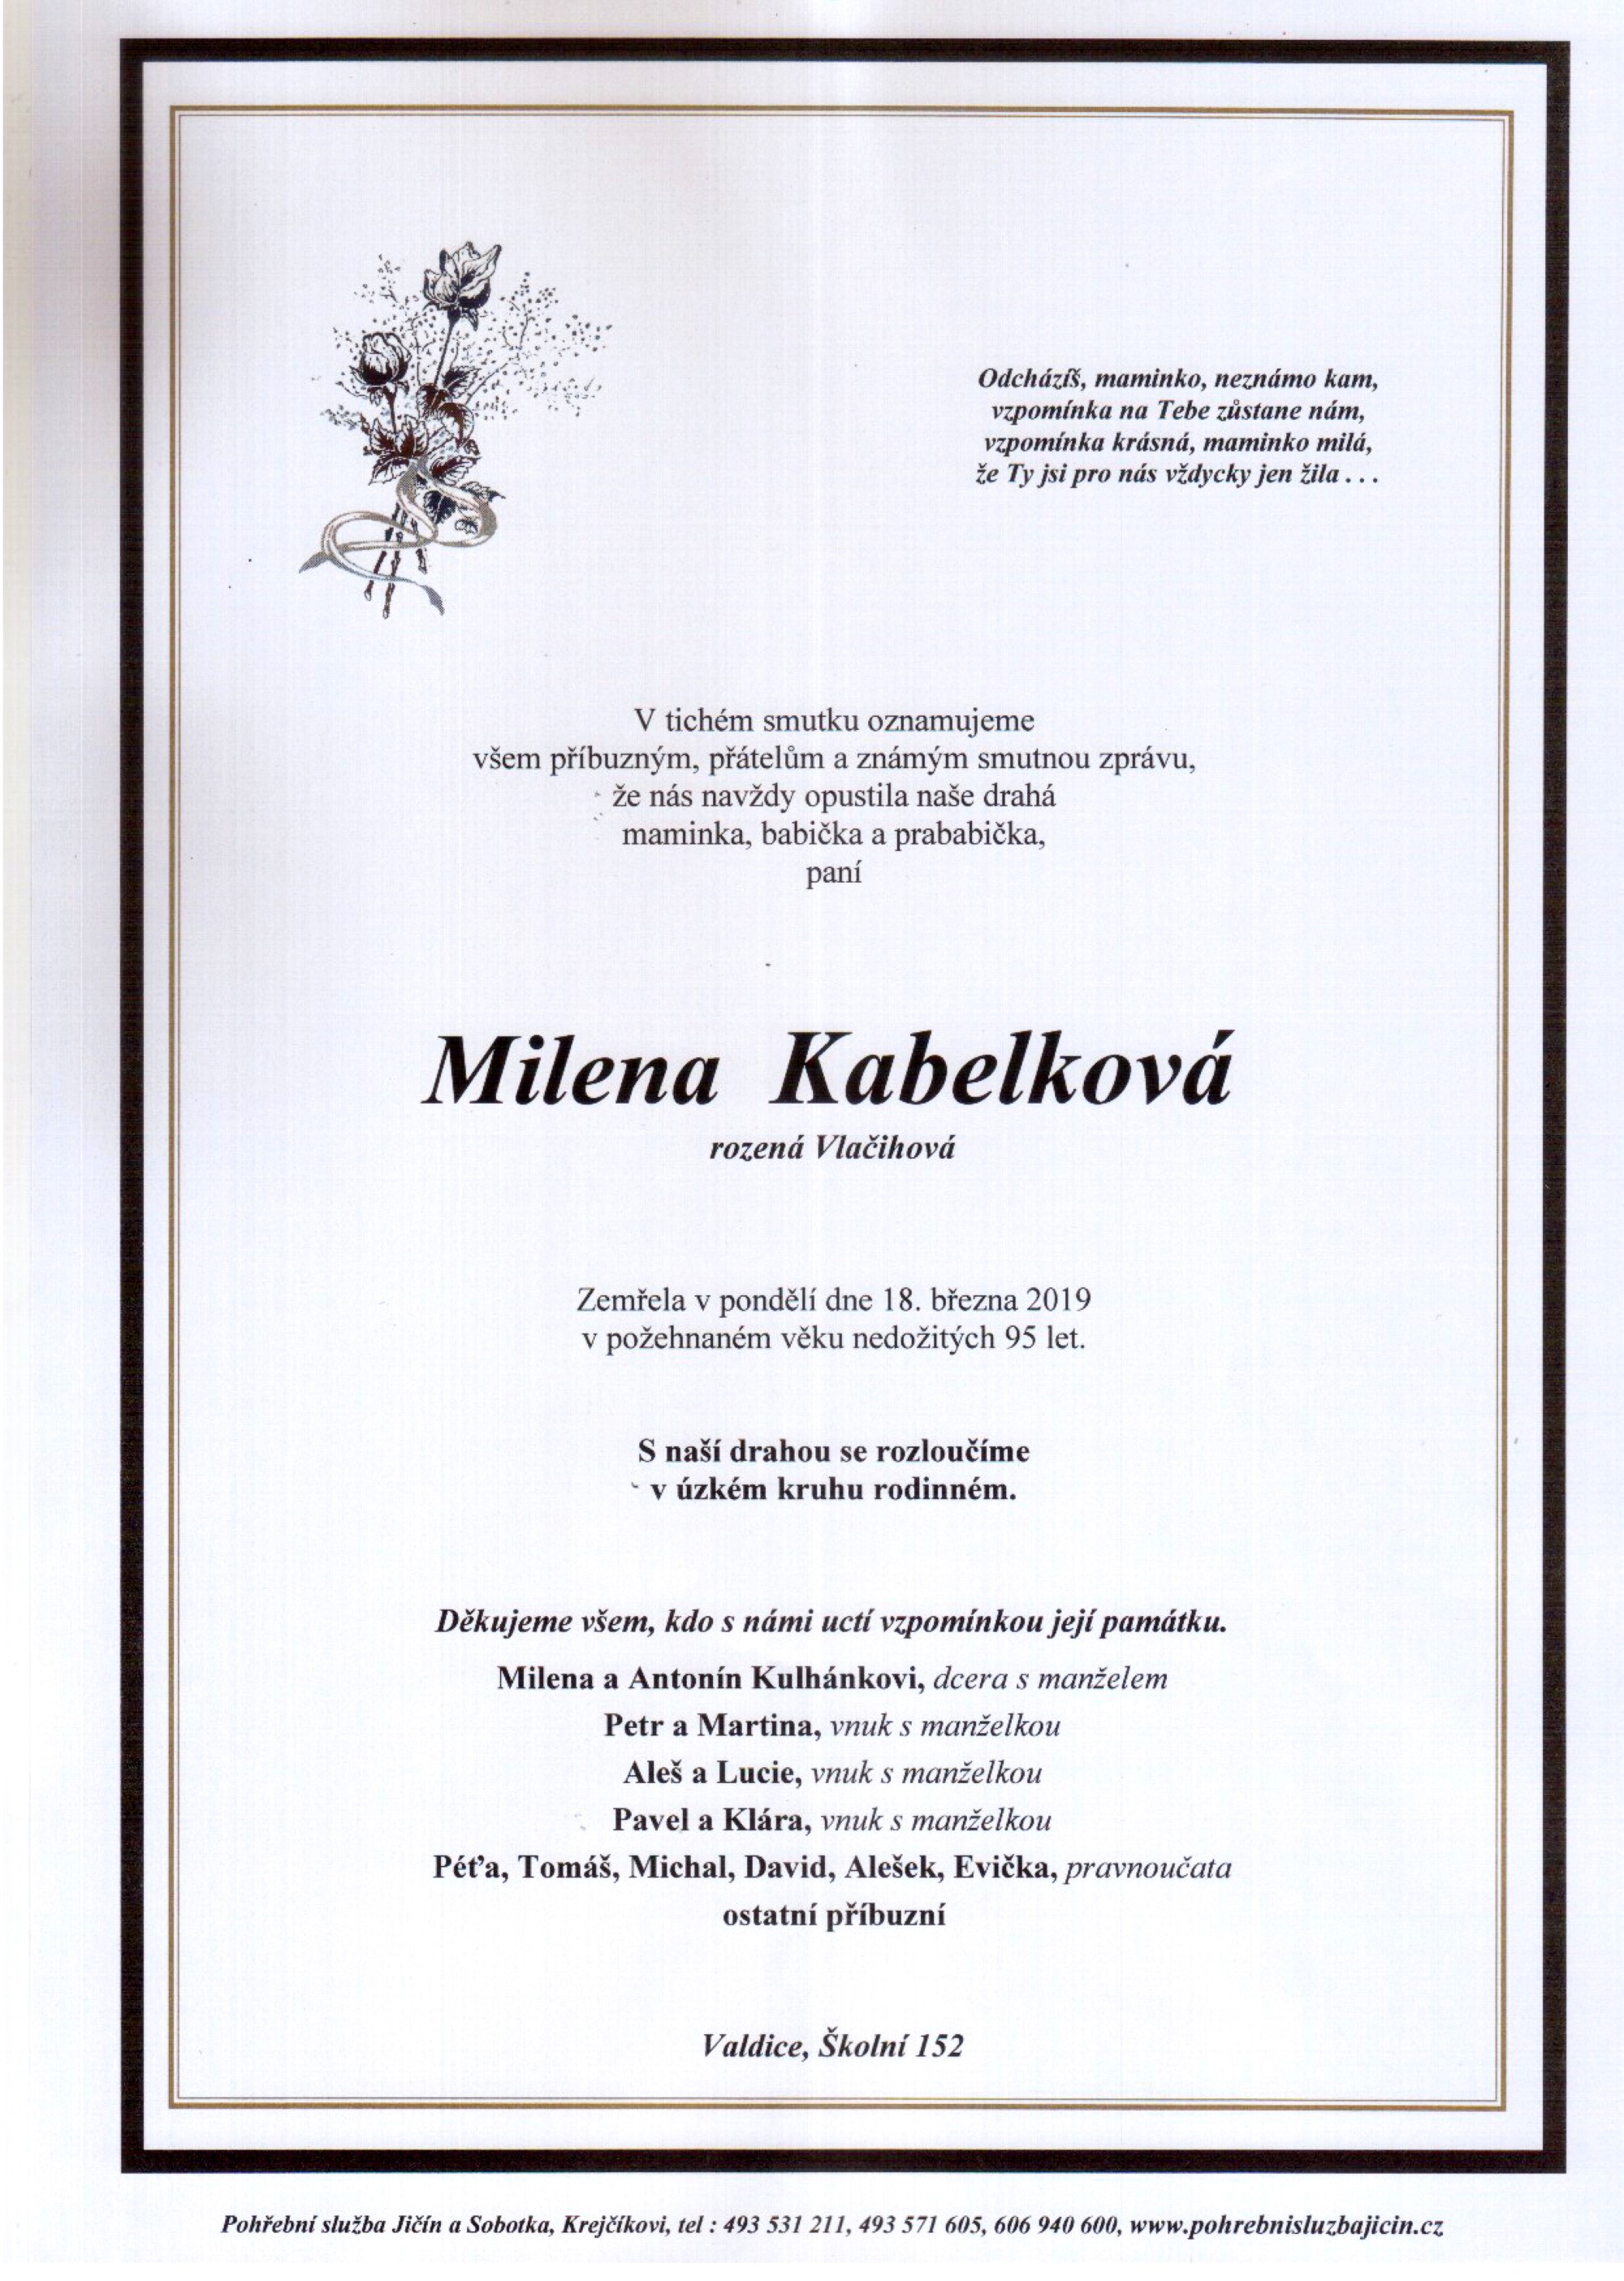 Milena Kabelková